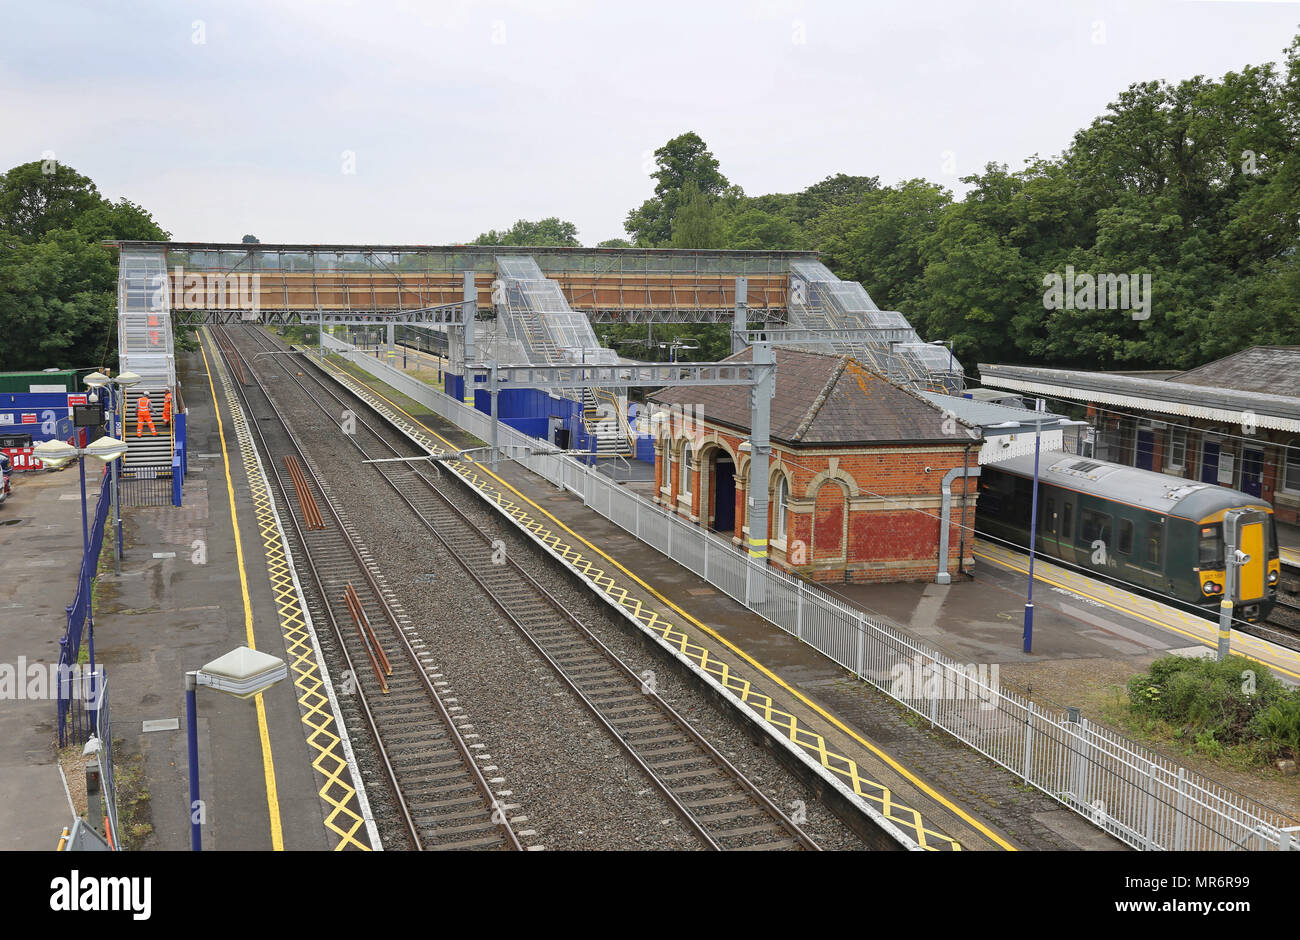 Taplow Bahnhof, westlich von London, UK. Zeigt Titel, Plattformen und temporäre Fußgängerbrücke zwischen Plattformen. Stockfoto